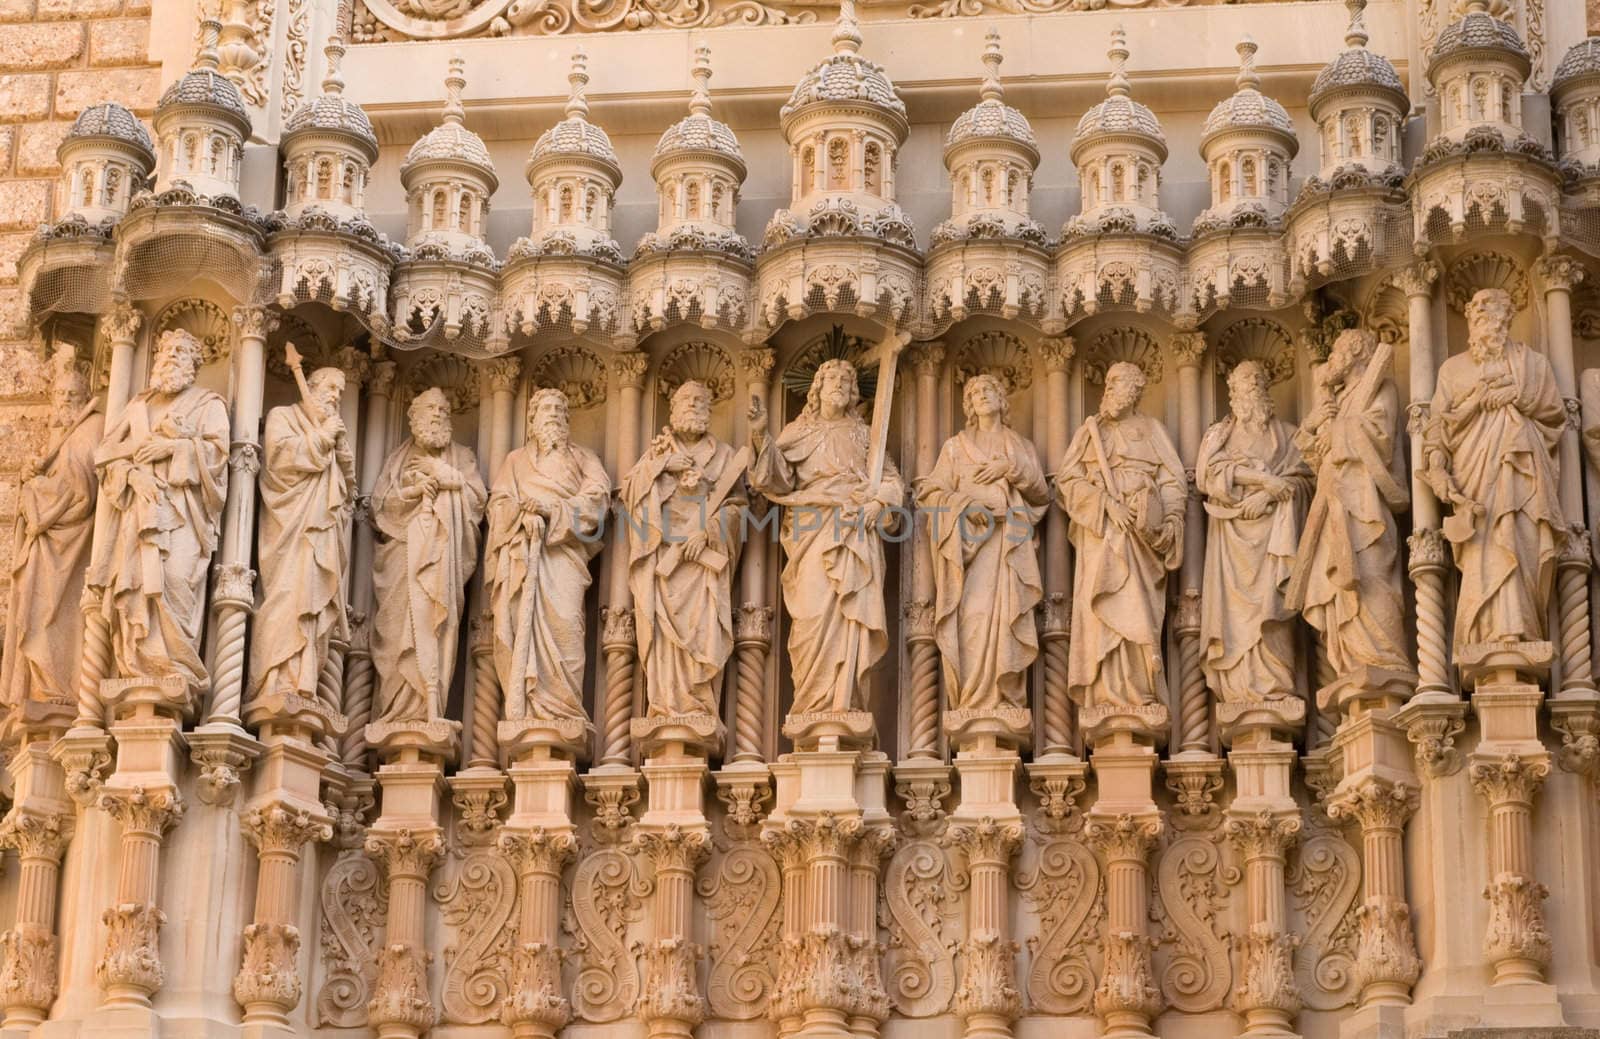 Statues of the Twelve Apostles (katalonien - Spain) by motorolka